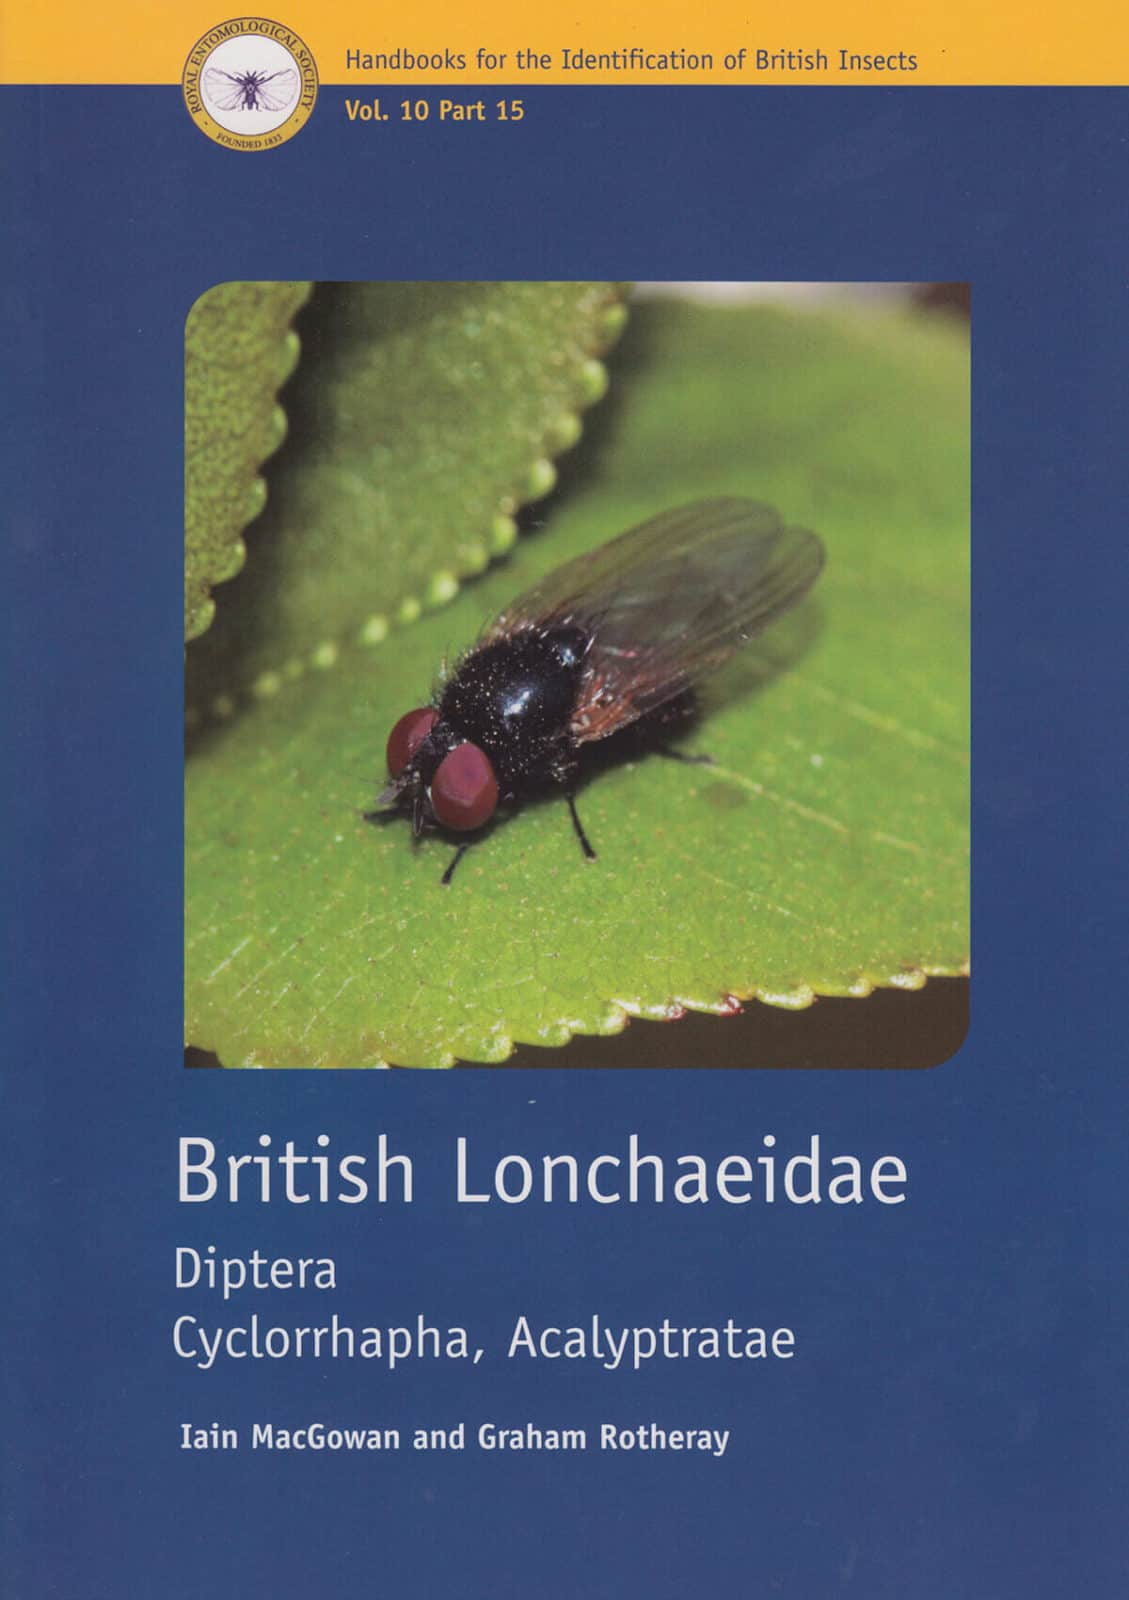 Lonchaeidae